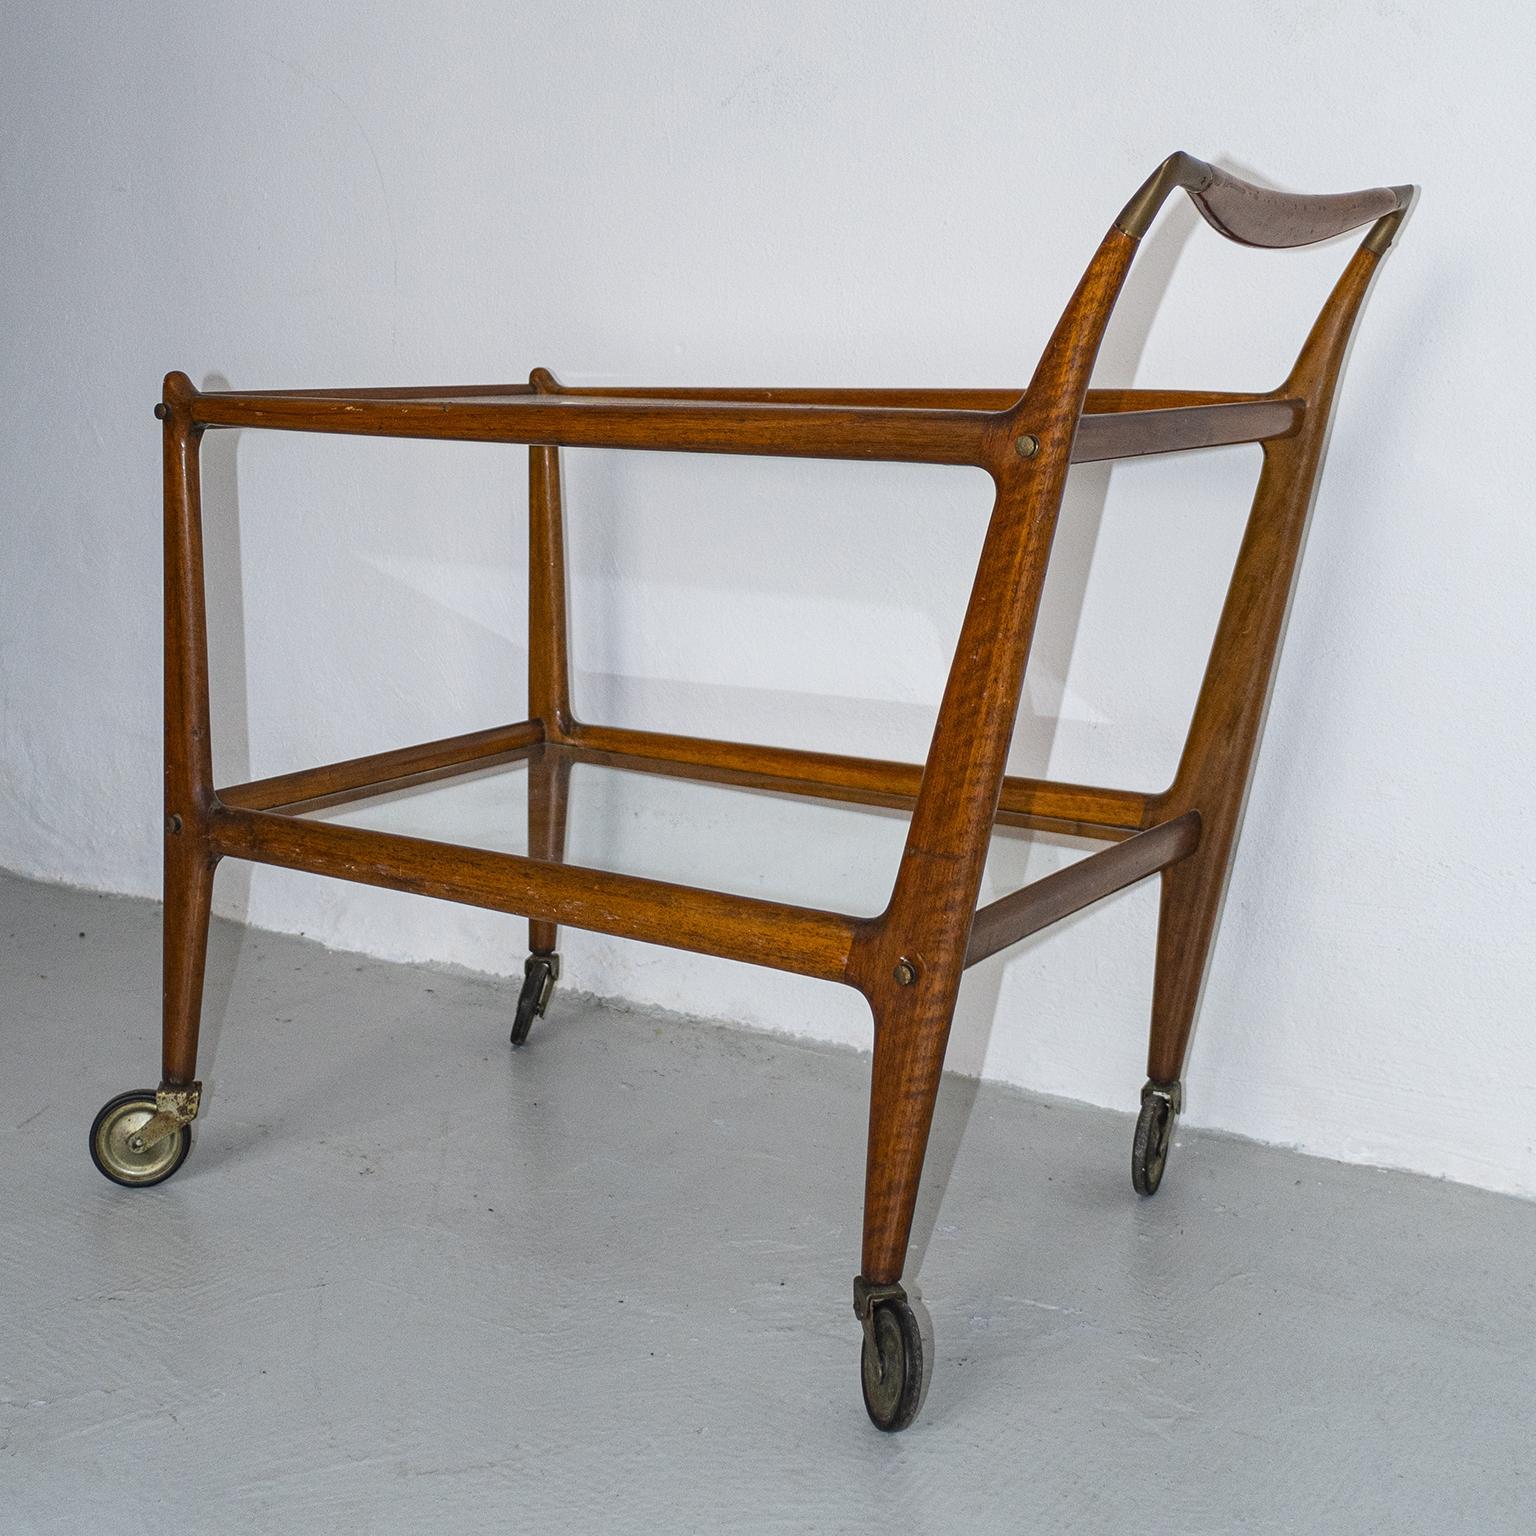 Nous vous proposons un chariot de bar très rare et extrêmement bien conservé, conçu par Ico Parisi vers le milieu des années 1950. Créé pour l'entreprise italienne de meubles De Boggis, sa dénomination officielle était 